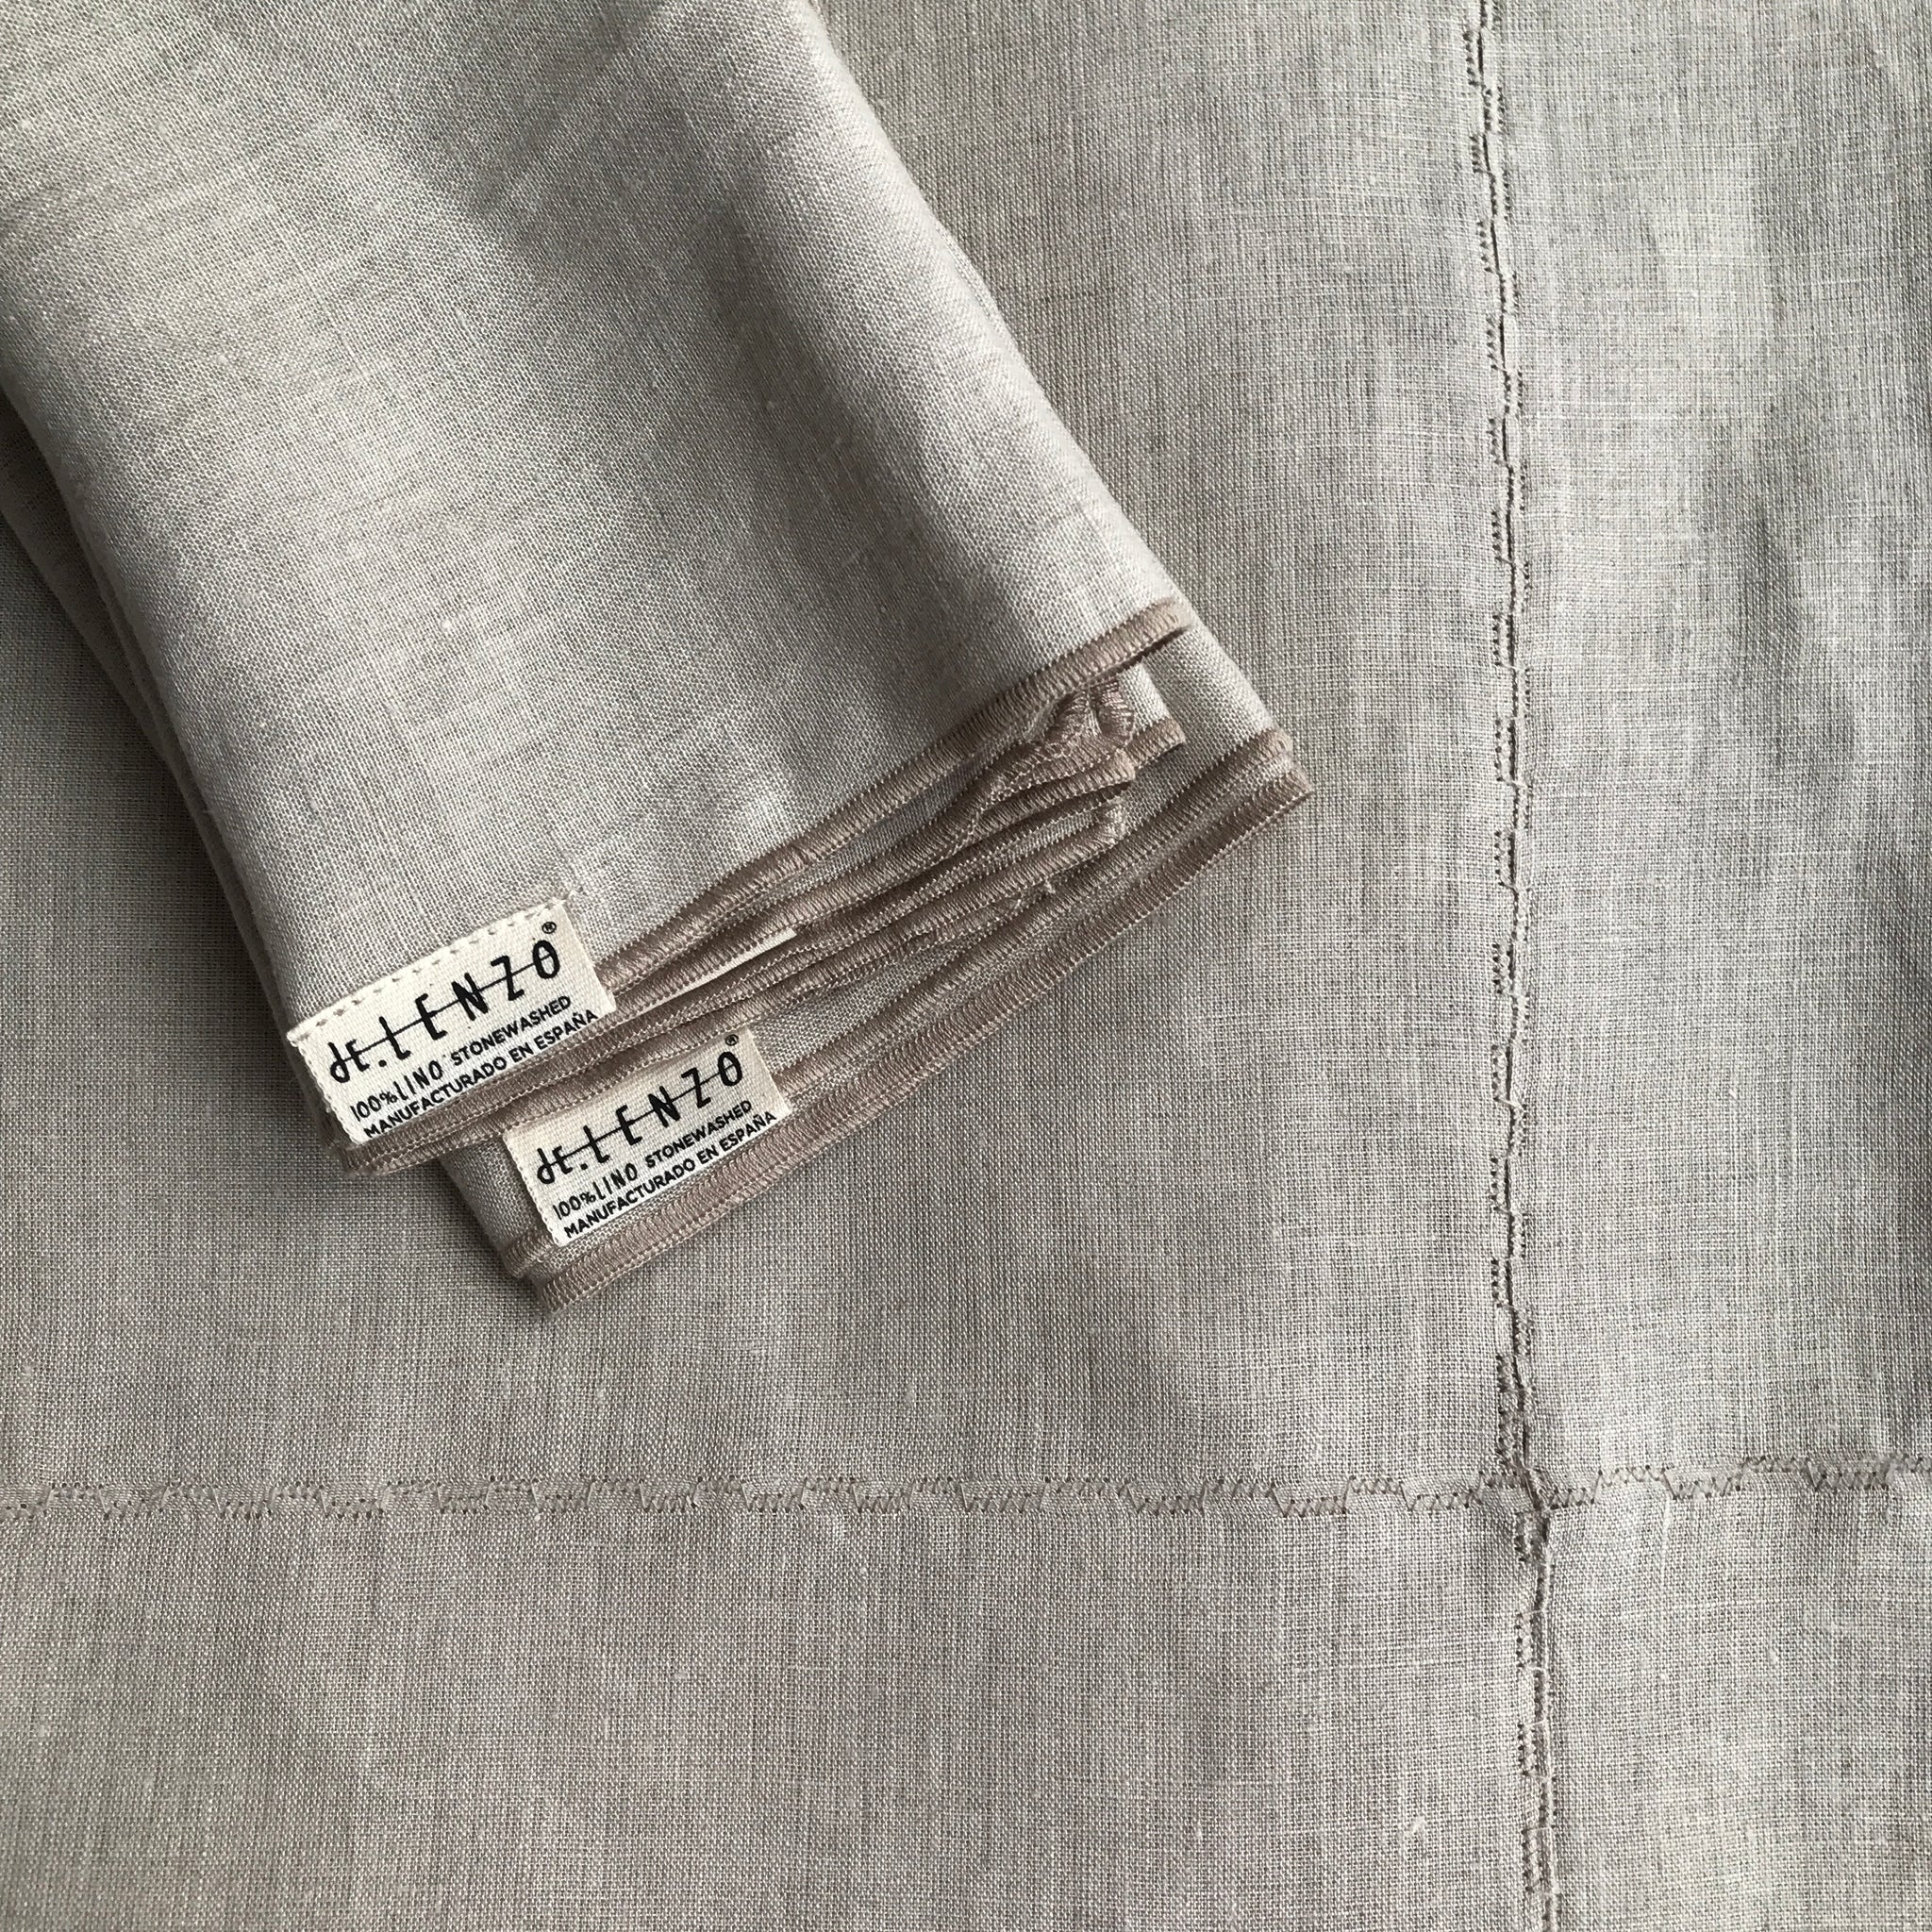 Detalle de servilletas de lino natural con su bordado.